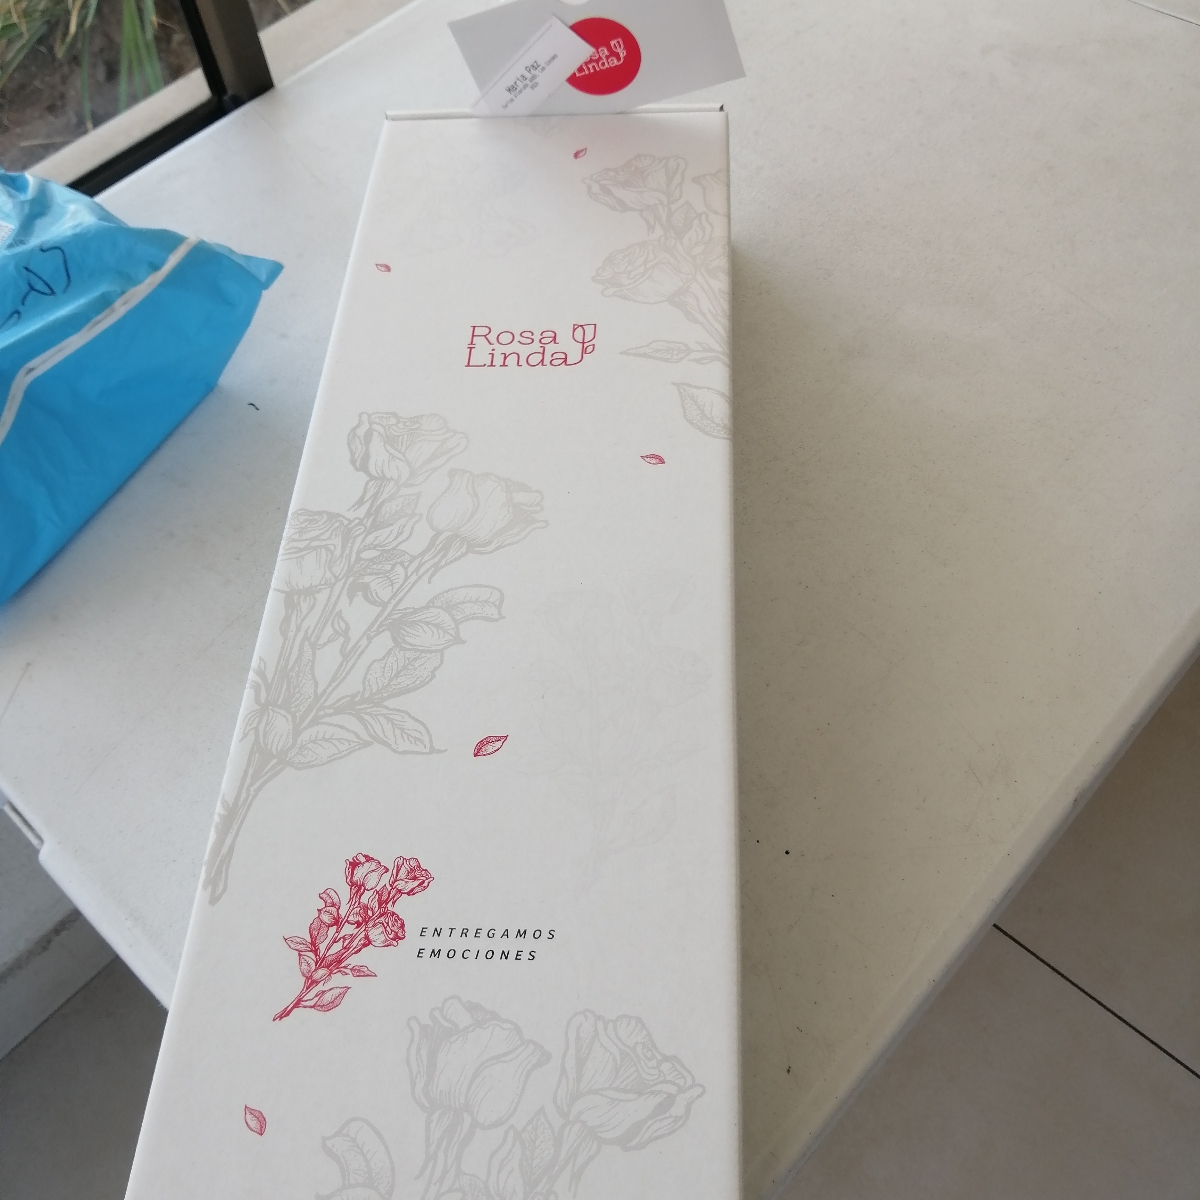 Girasoles FlowerBox - Caja de flores con 12 girasoles - Pedido 243125